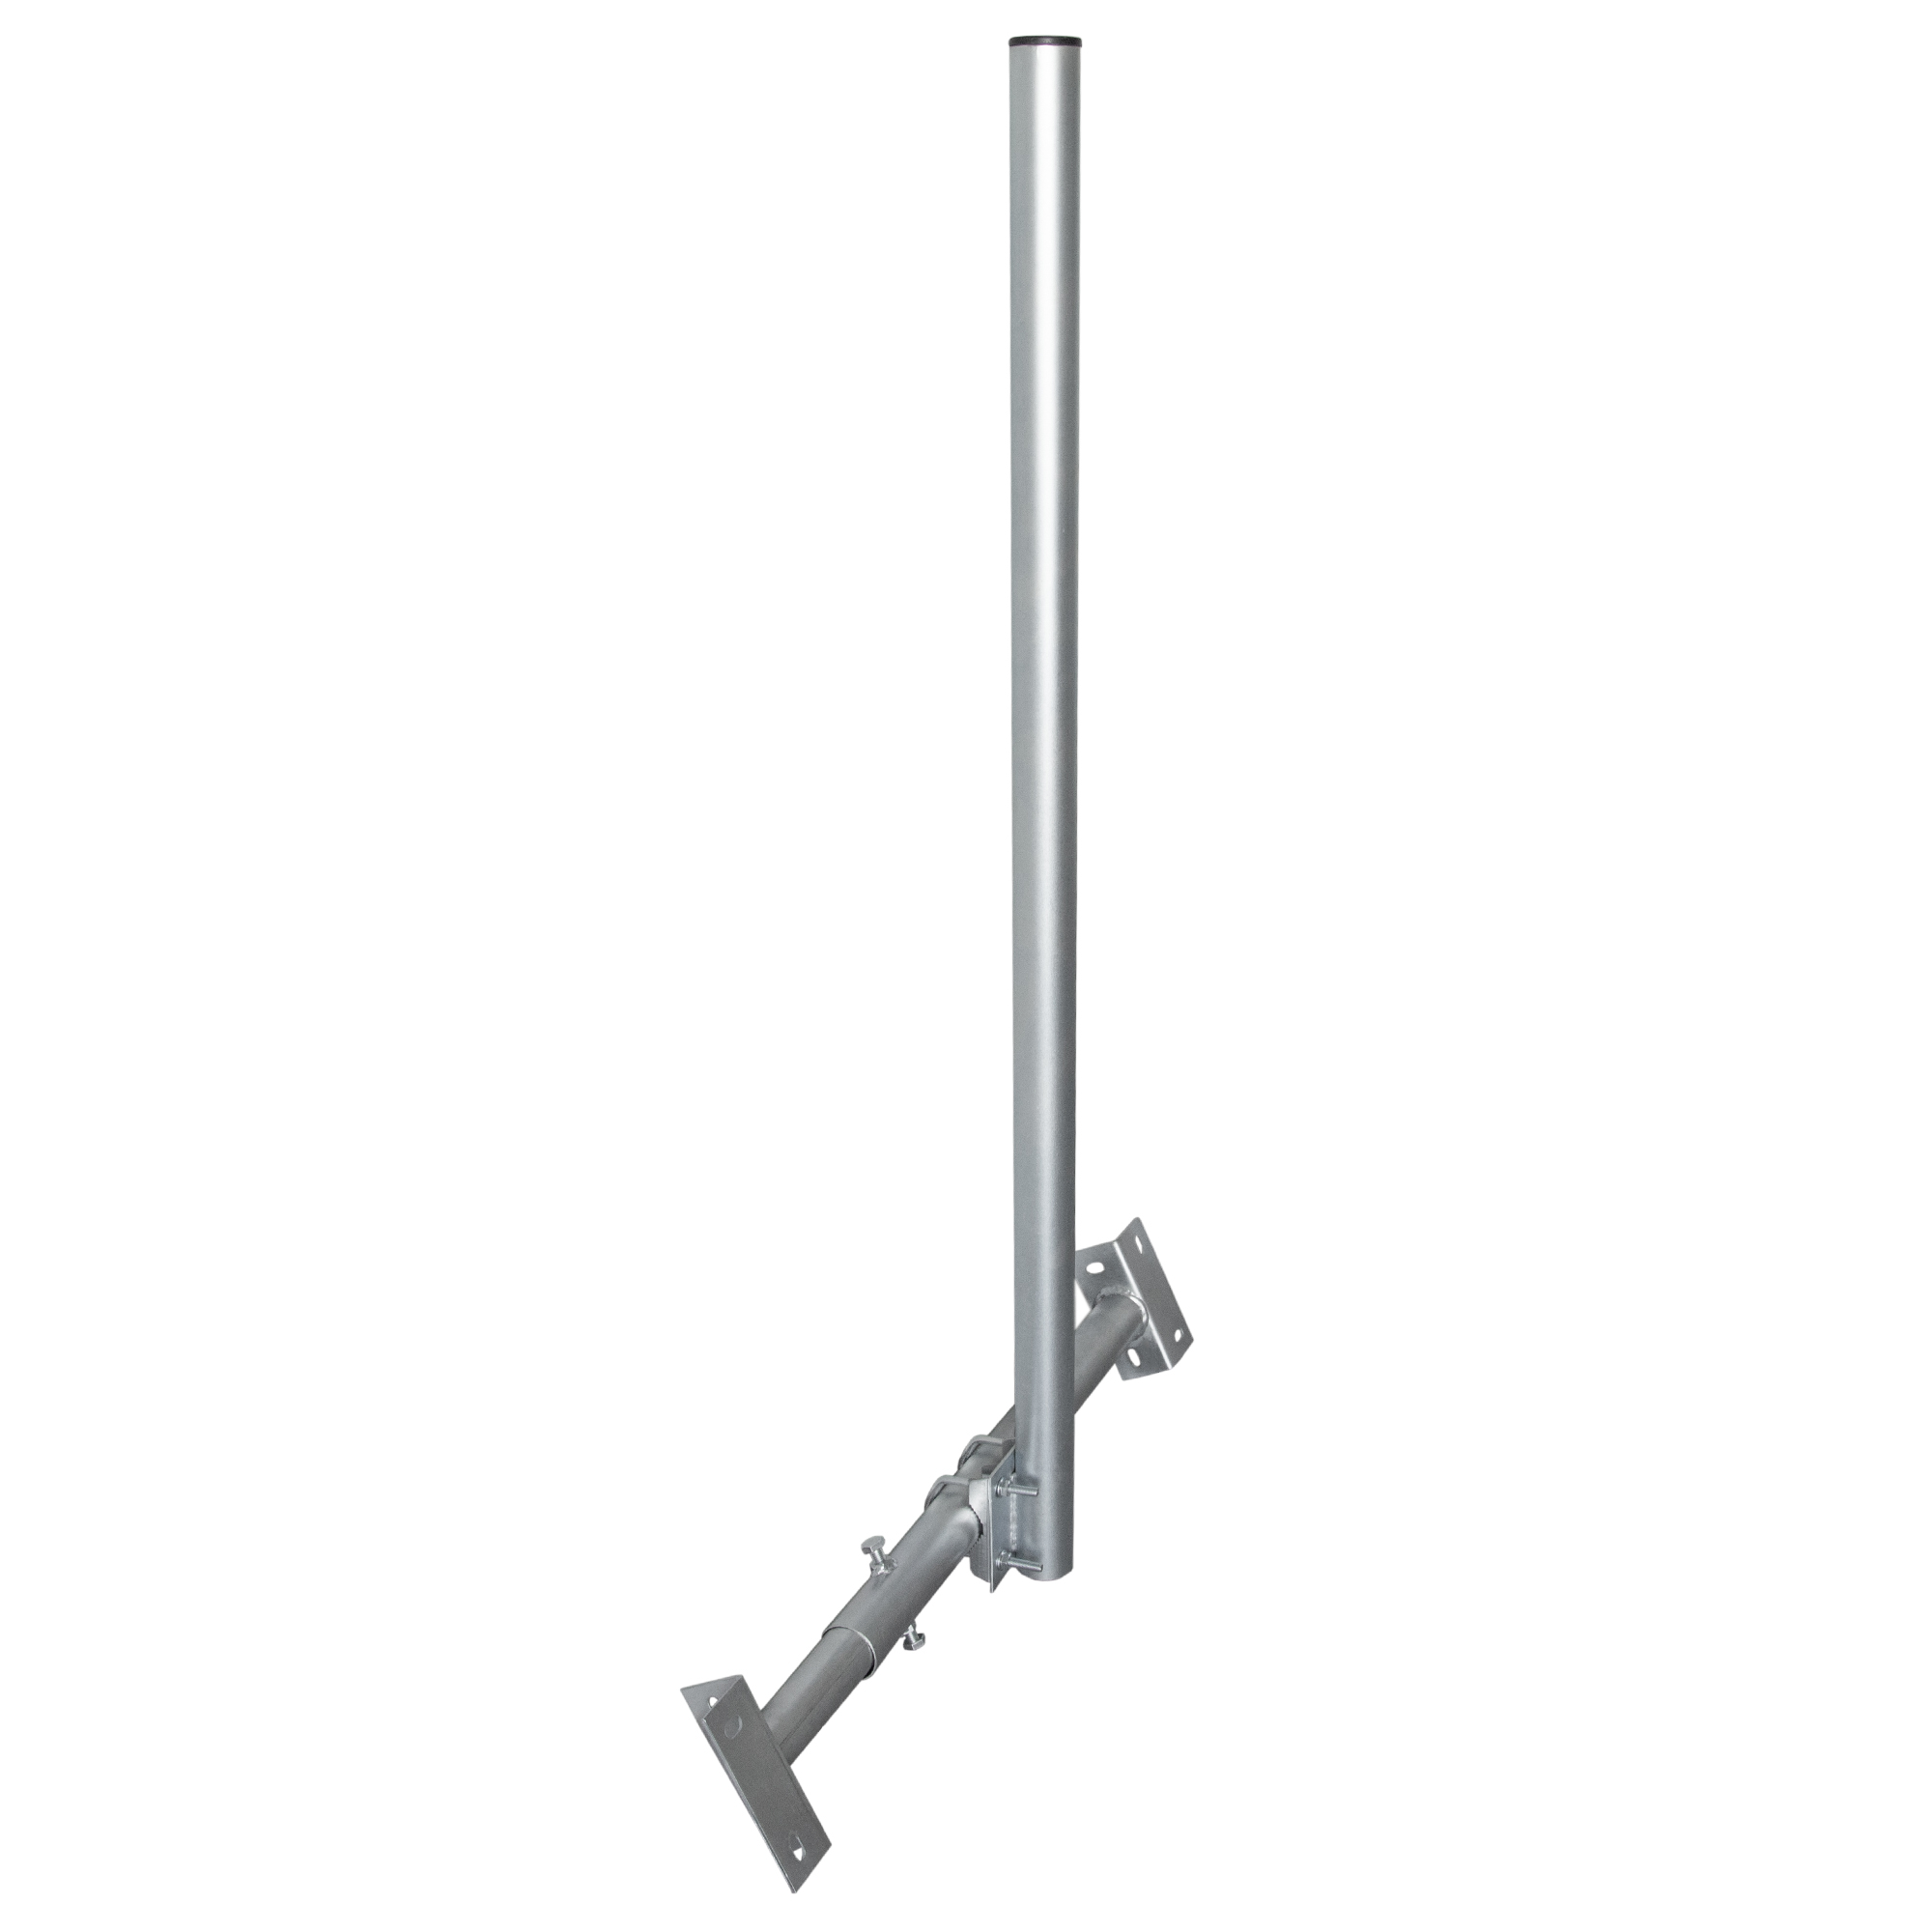 PREMIUMX BASIC X120-48 Dachsparrenhalter Silber Dachsparrenhalterung, 48mm 120cm SAT feuerverzinkt Mast